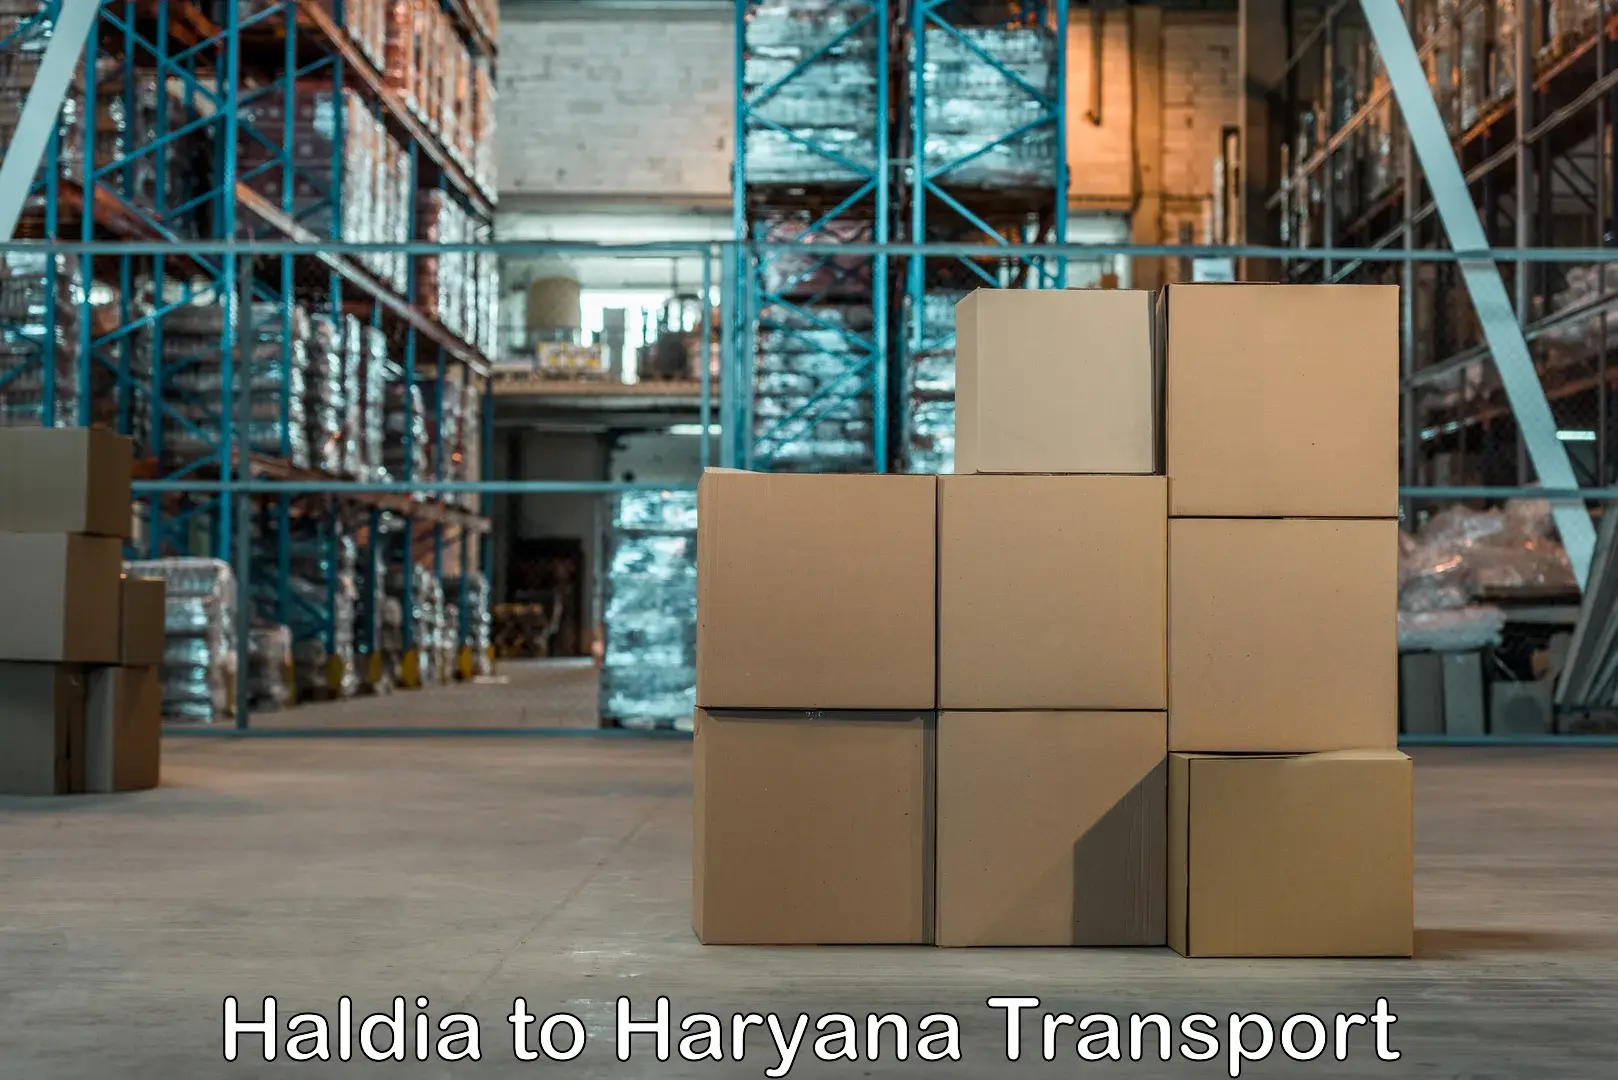 Delivery service Haldia to IIIT Sonepat